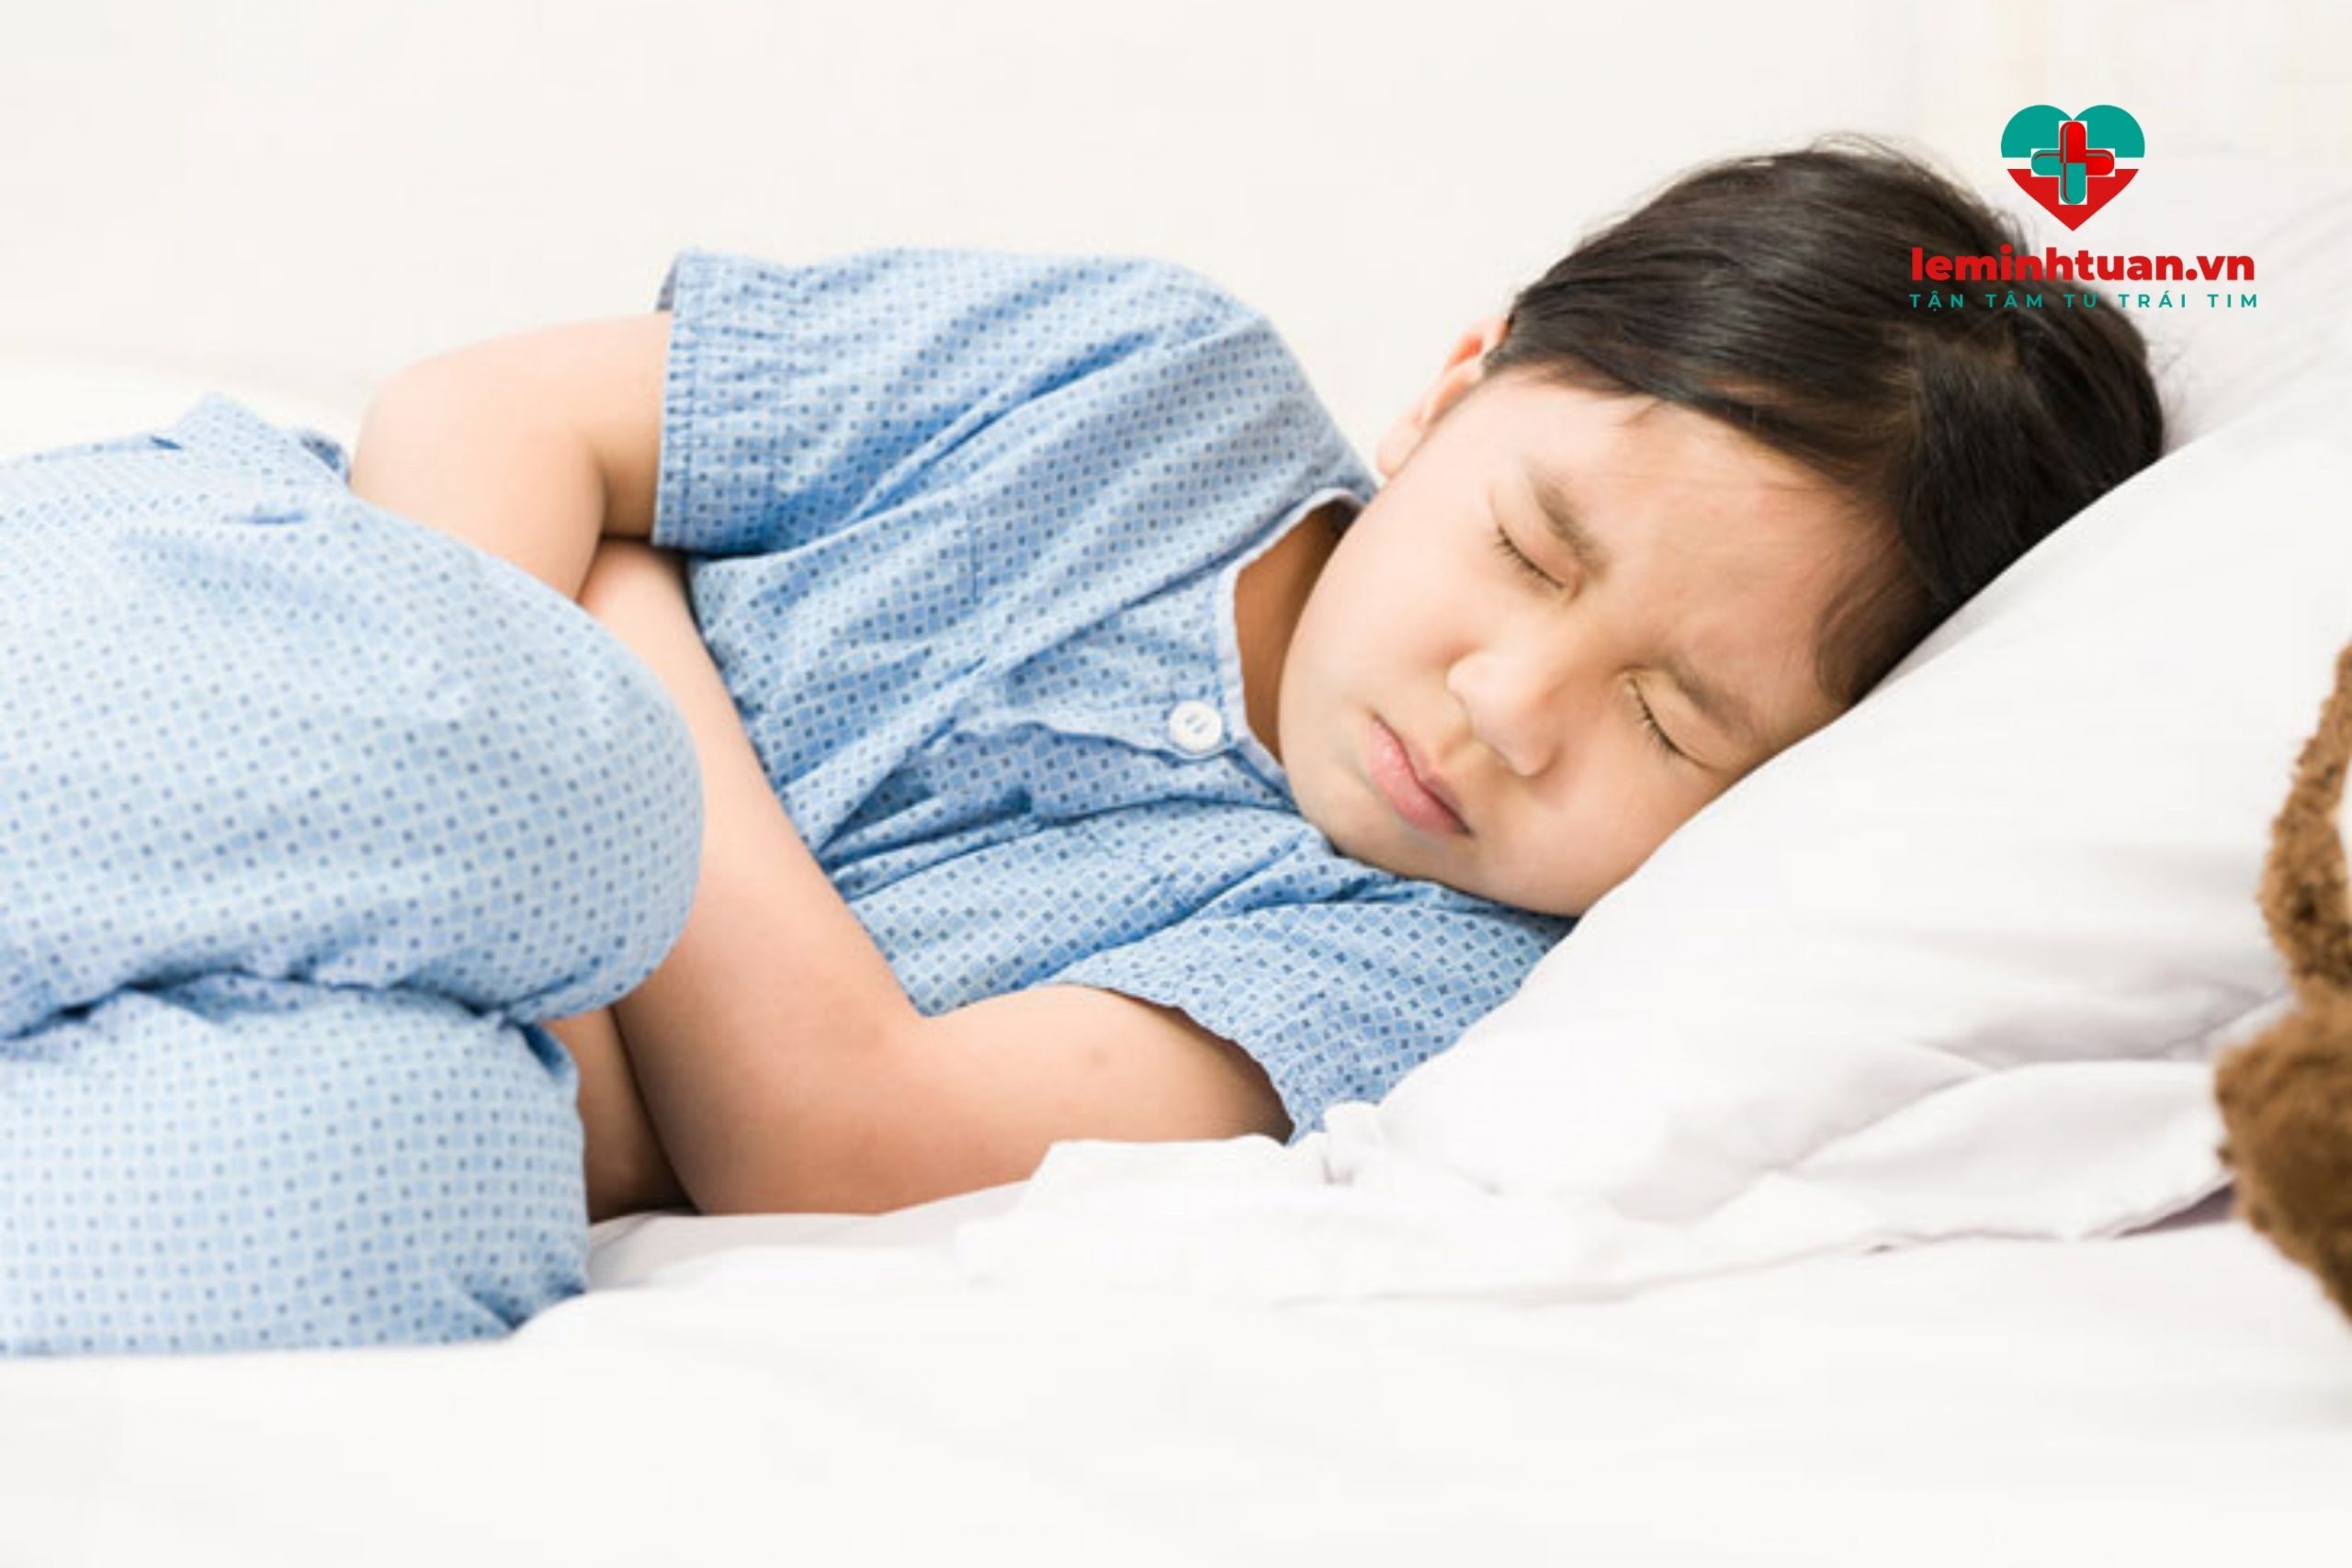 Cách chữa đau bụng ở trẻ em bằng áp dụng các biện pháp giảm đau tạm thời